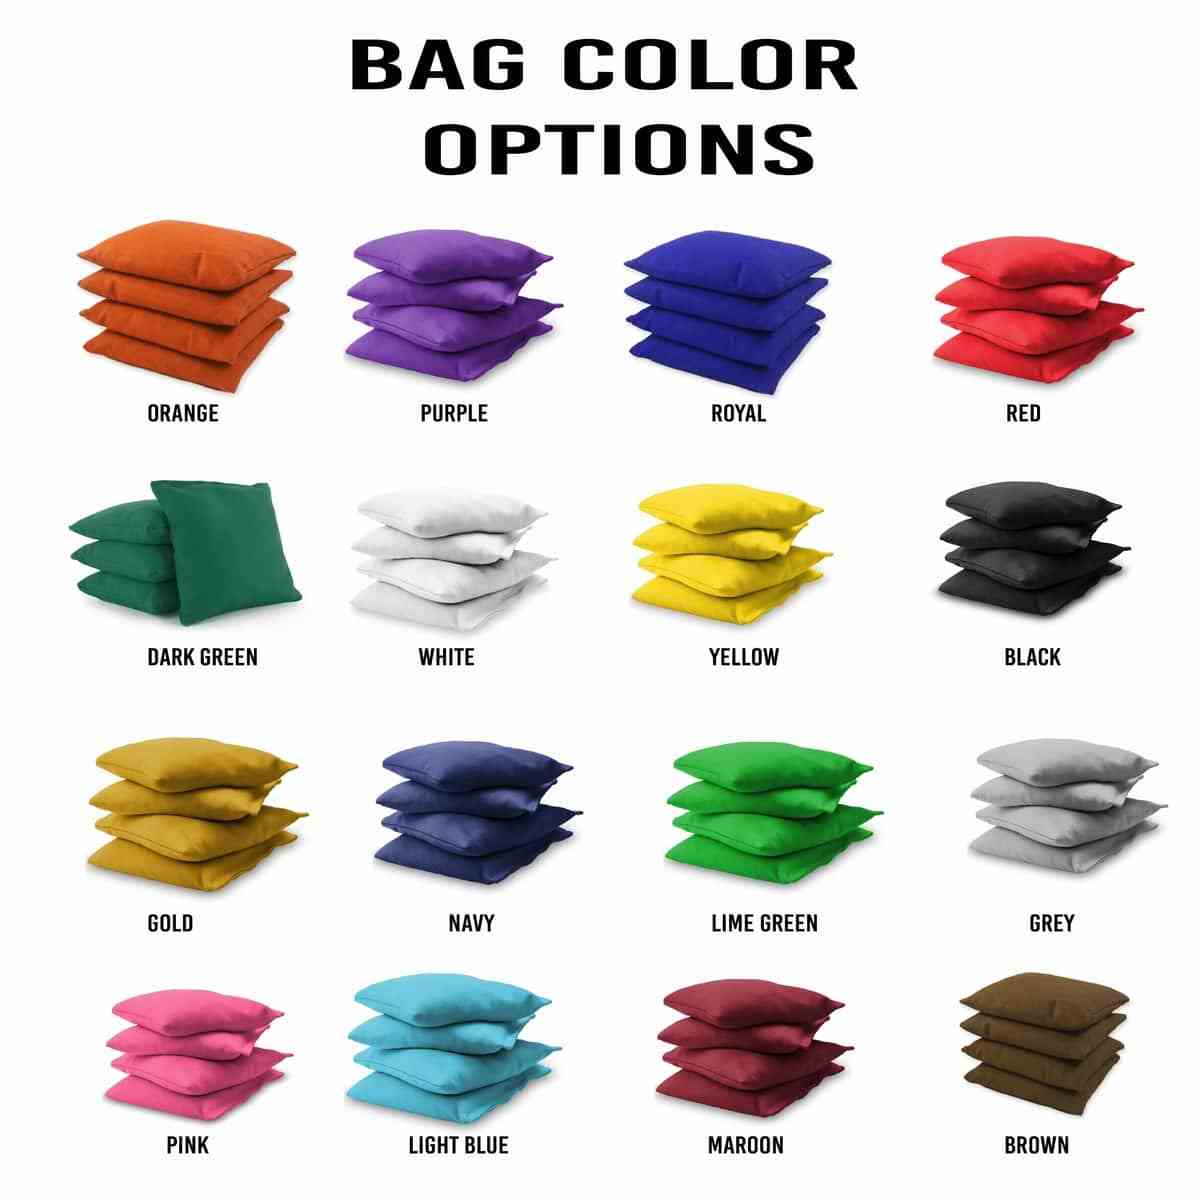 Glacier 2x4 bag colors